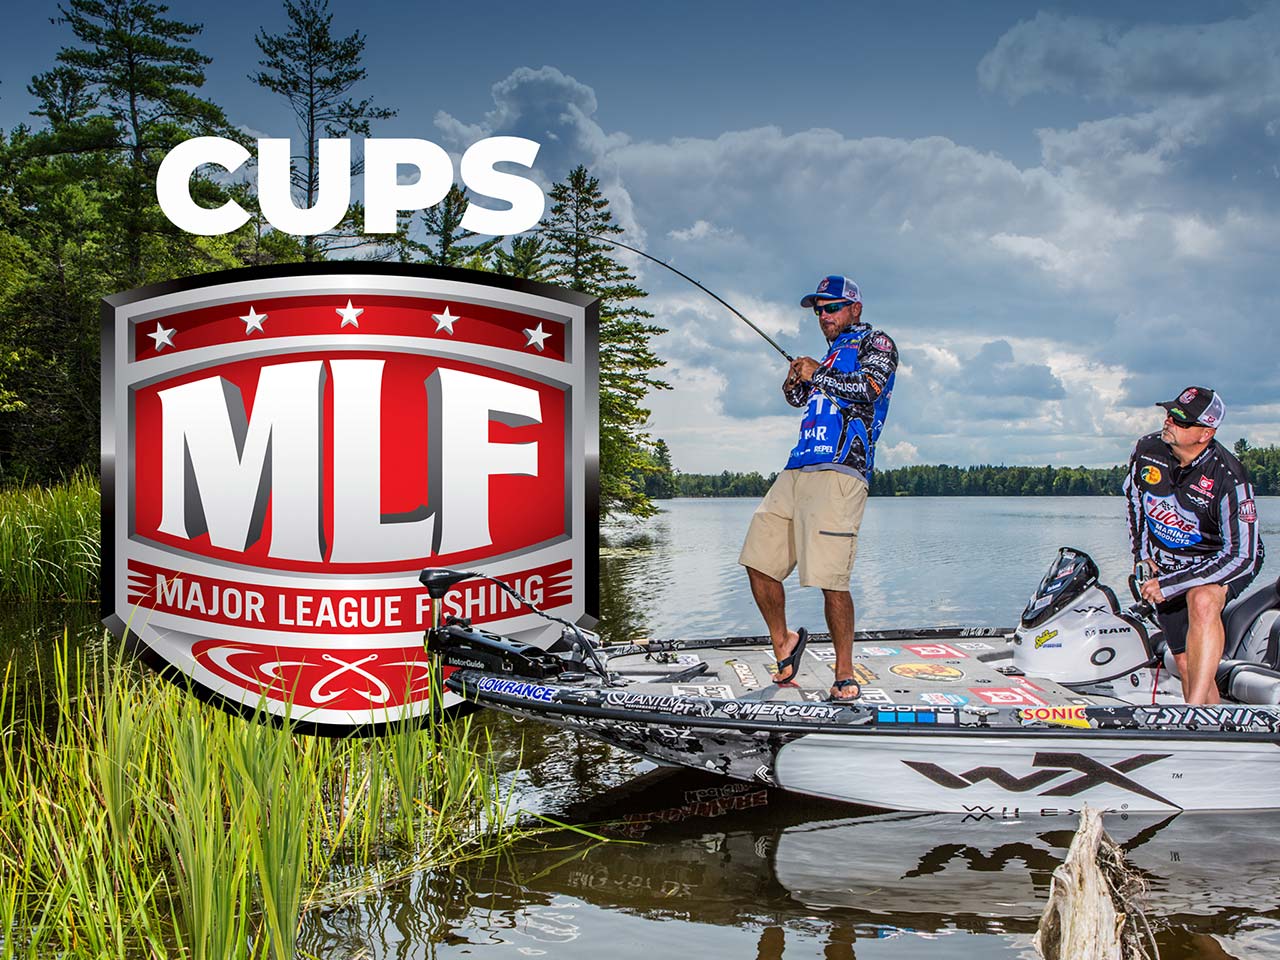 Power up your drop-shot - Major League Fishing